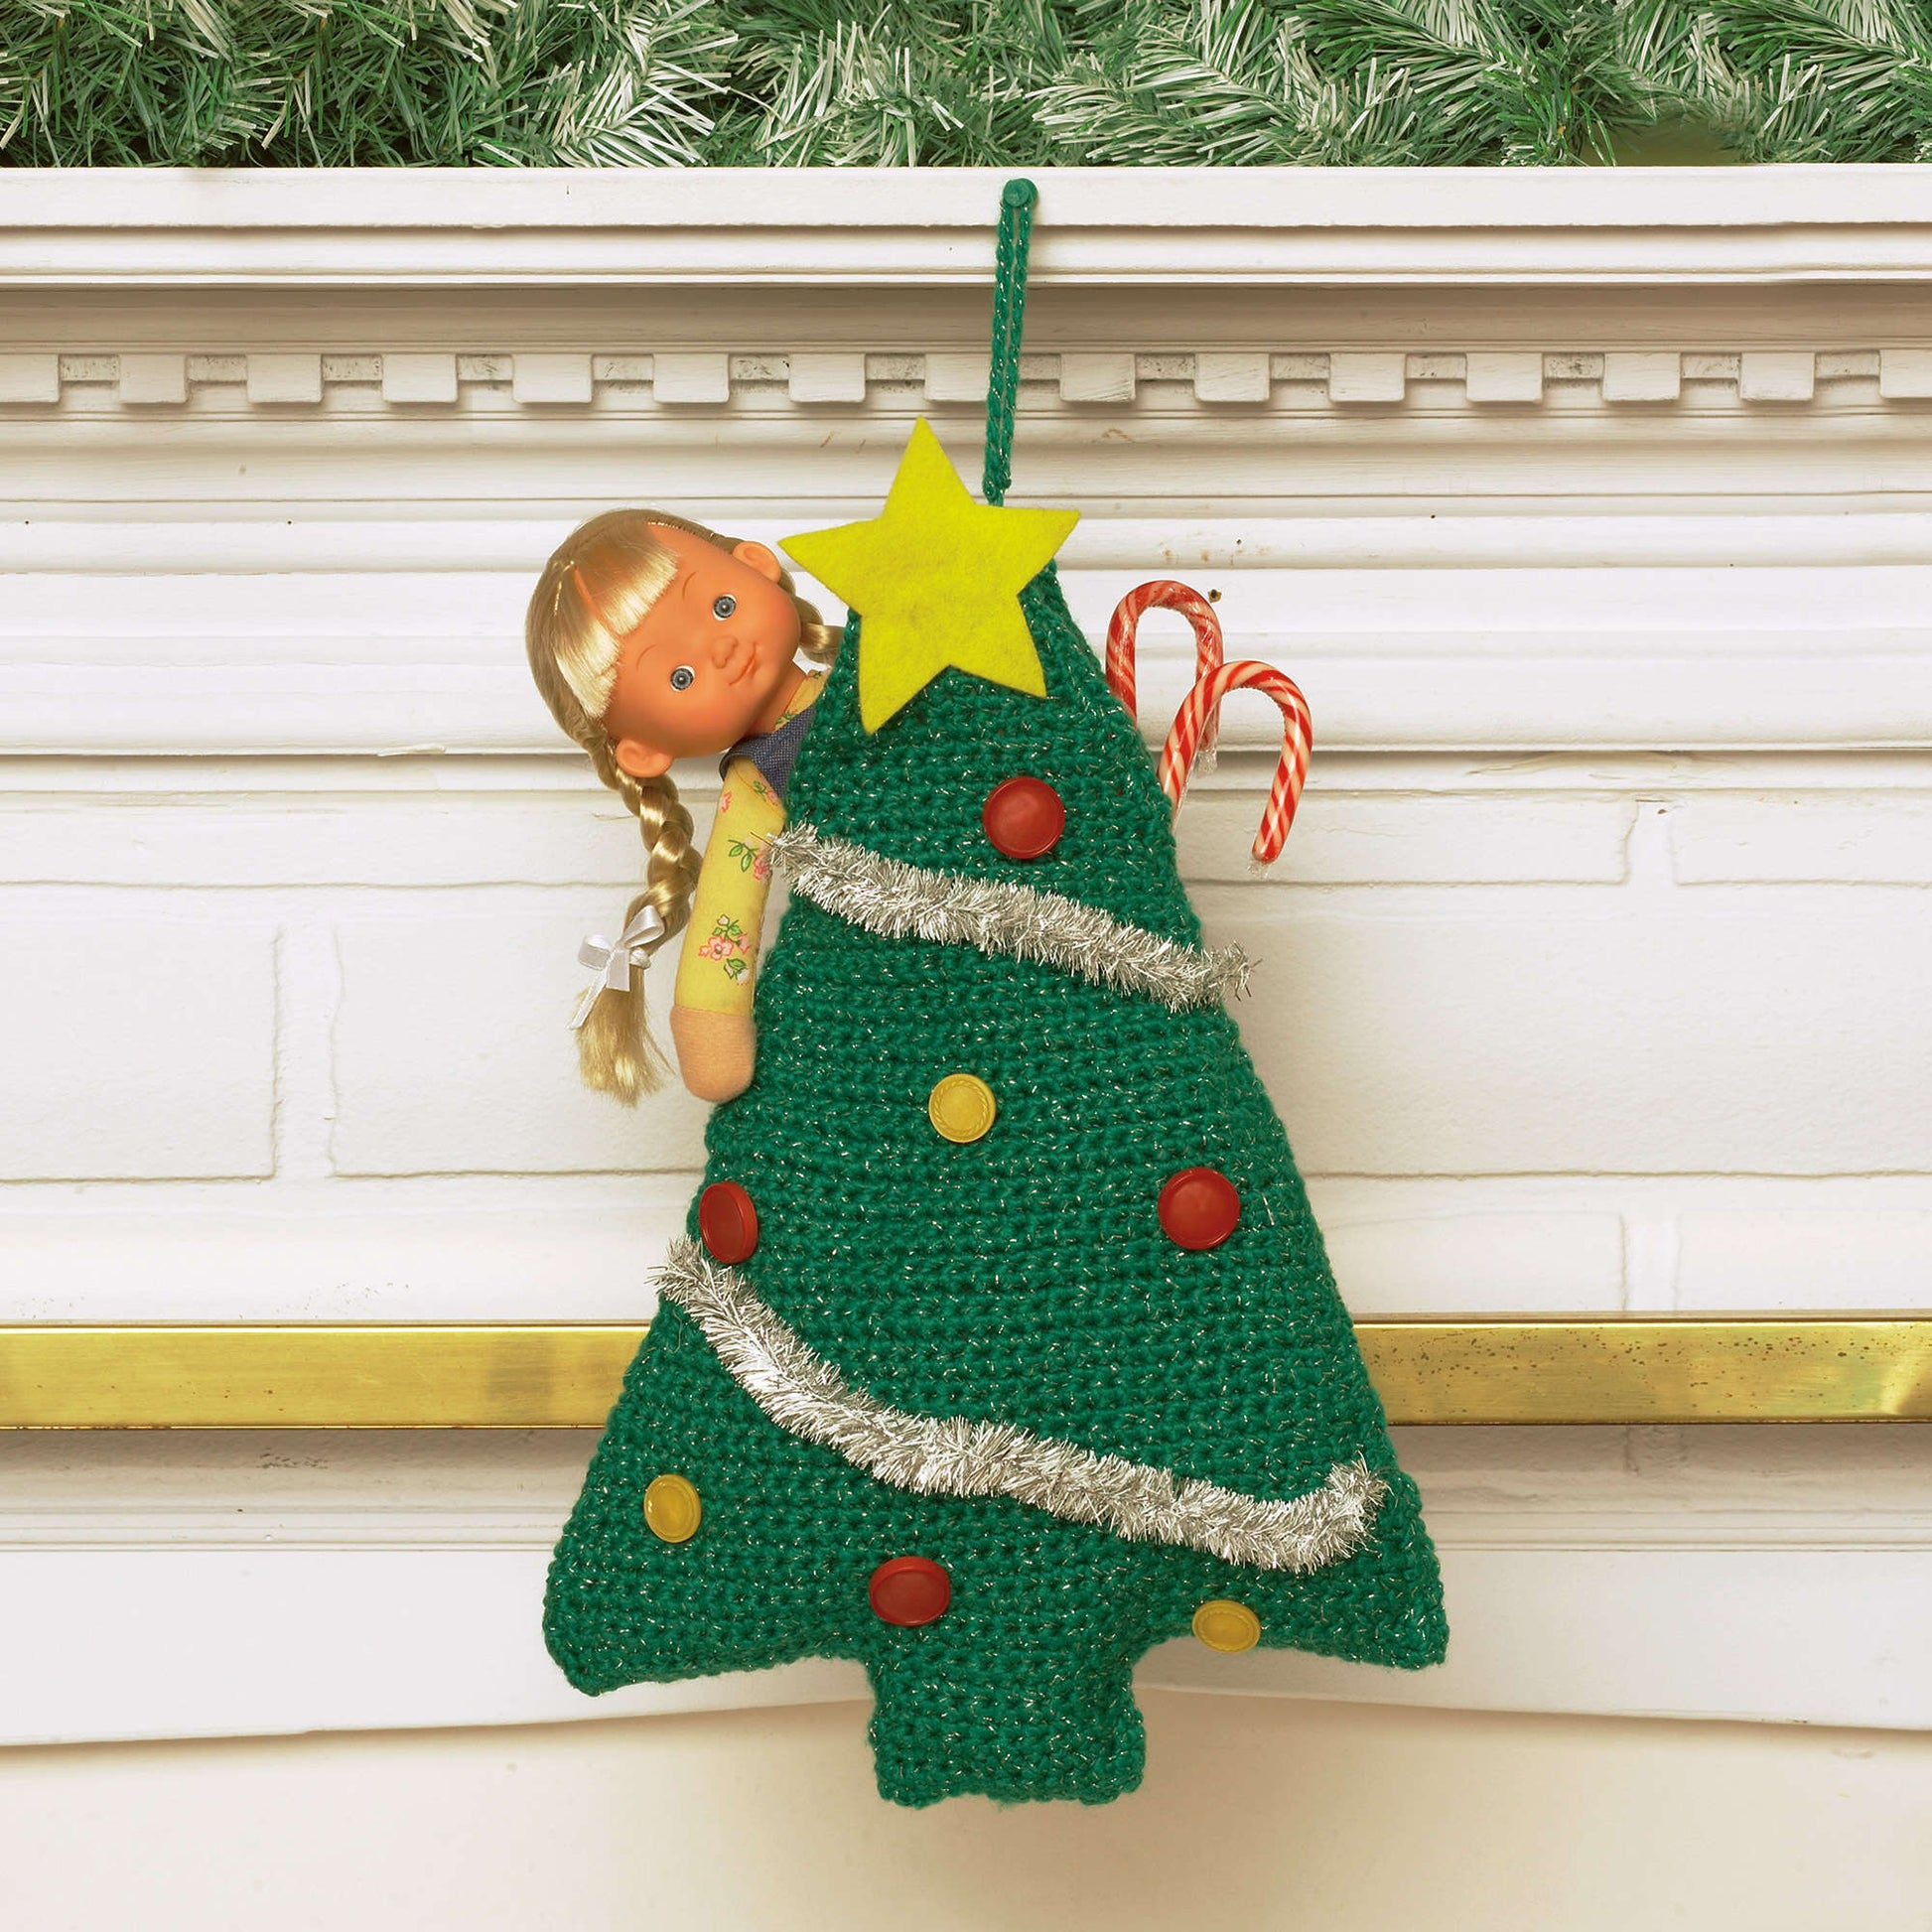 Bernat Easy Tree Stocking Crochet Holiday made in Bernat Happy Holidays yarn